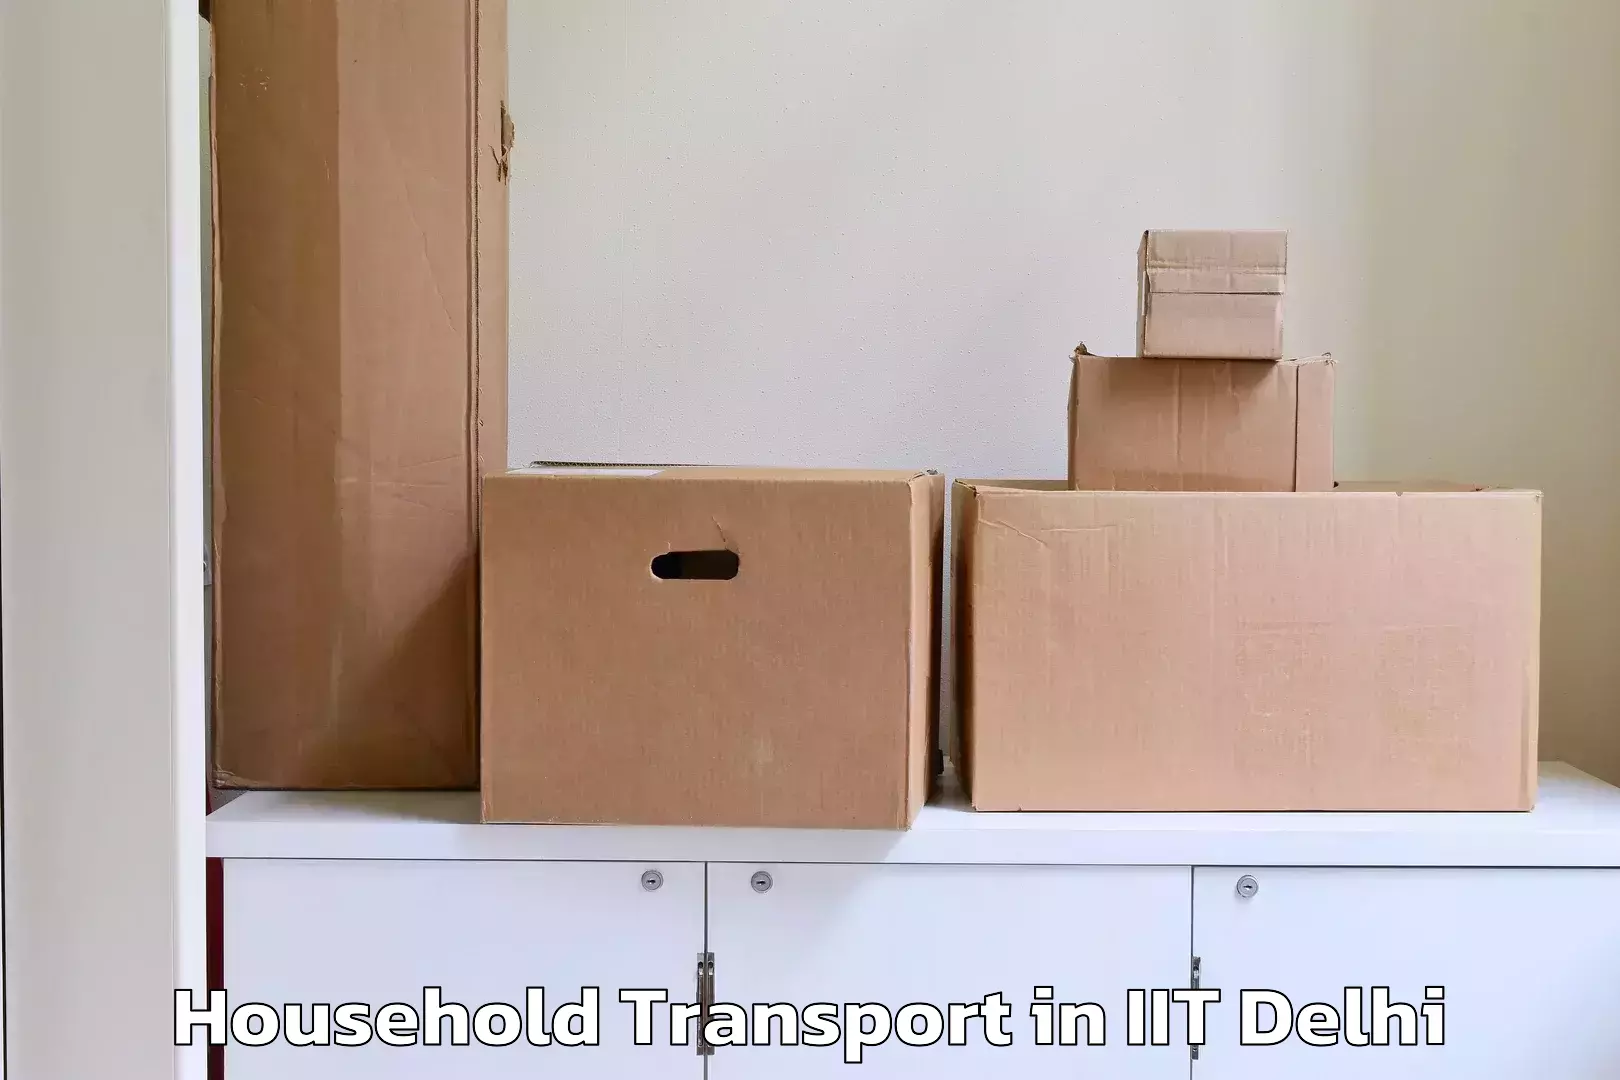 Online household goods transport in IIT Delhi